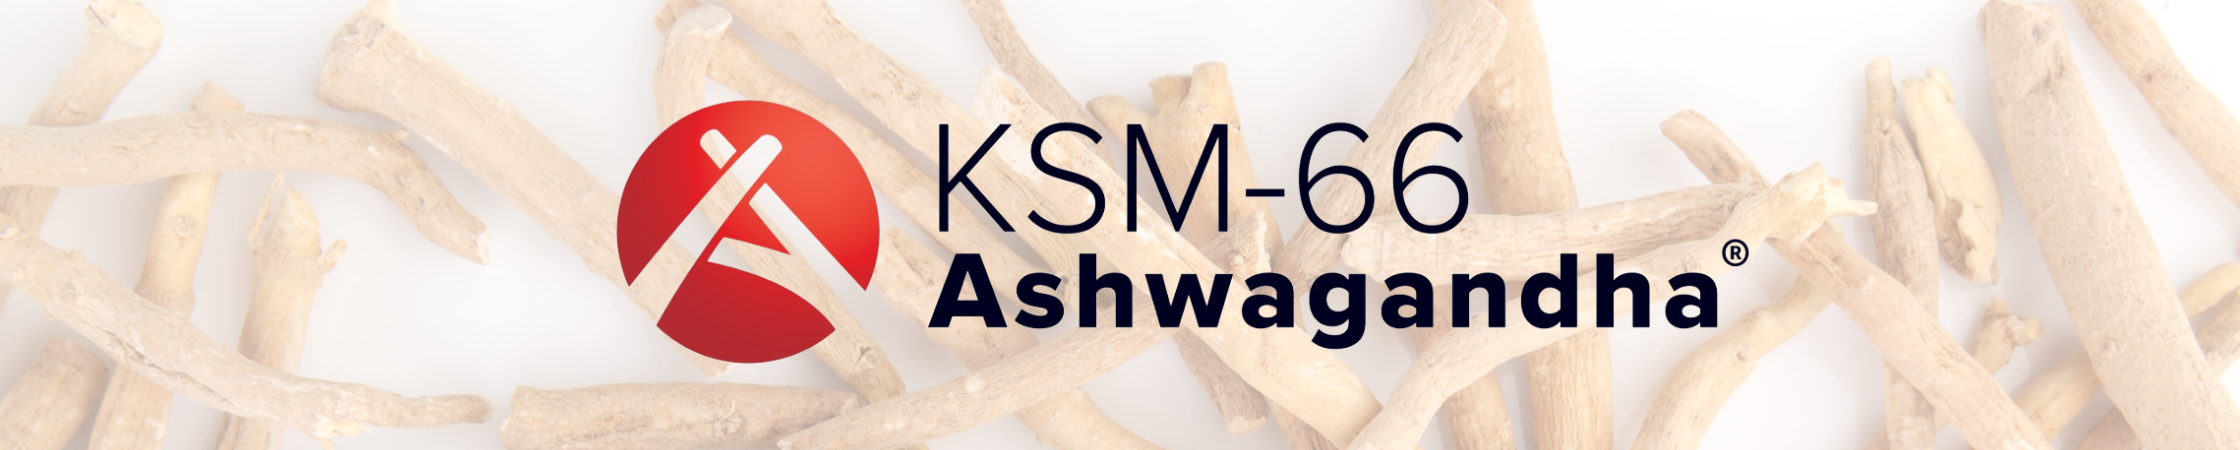 Wiecej o produkcie KSM 66 Ashwagandha